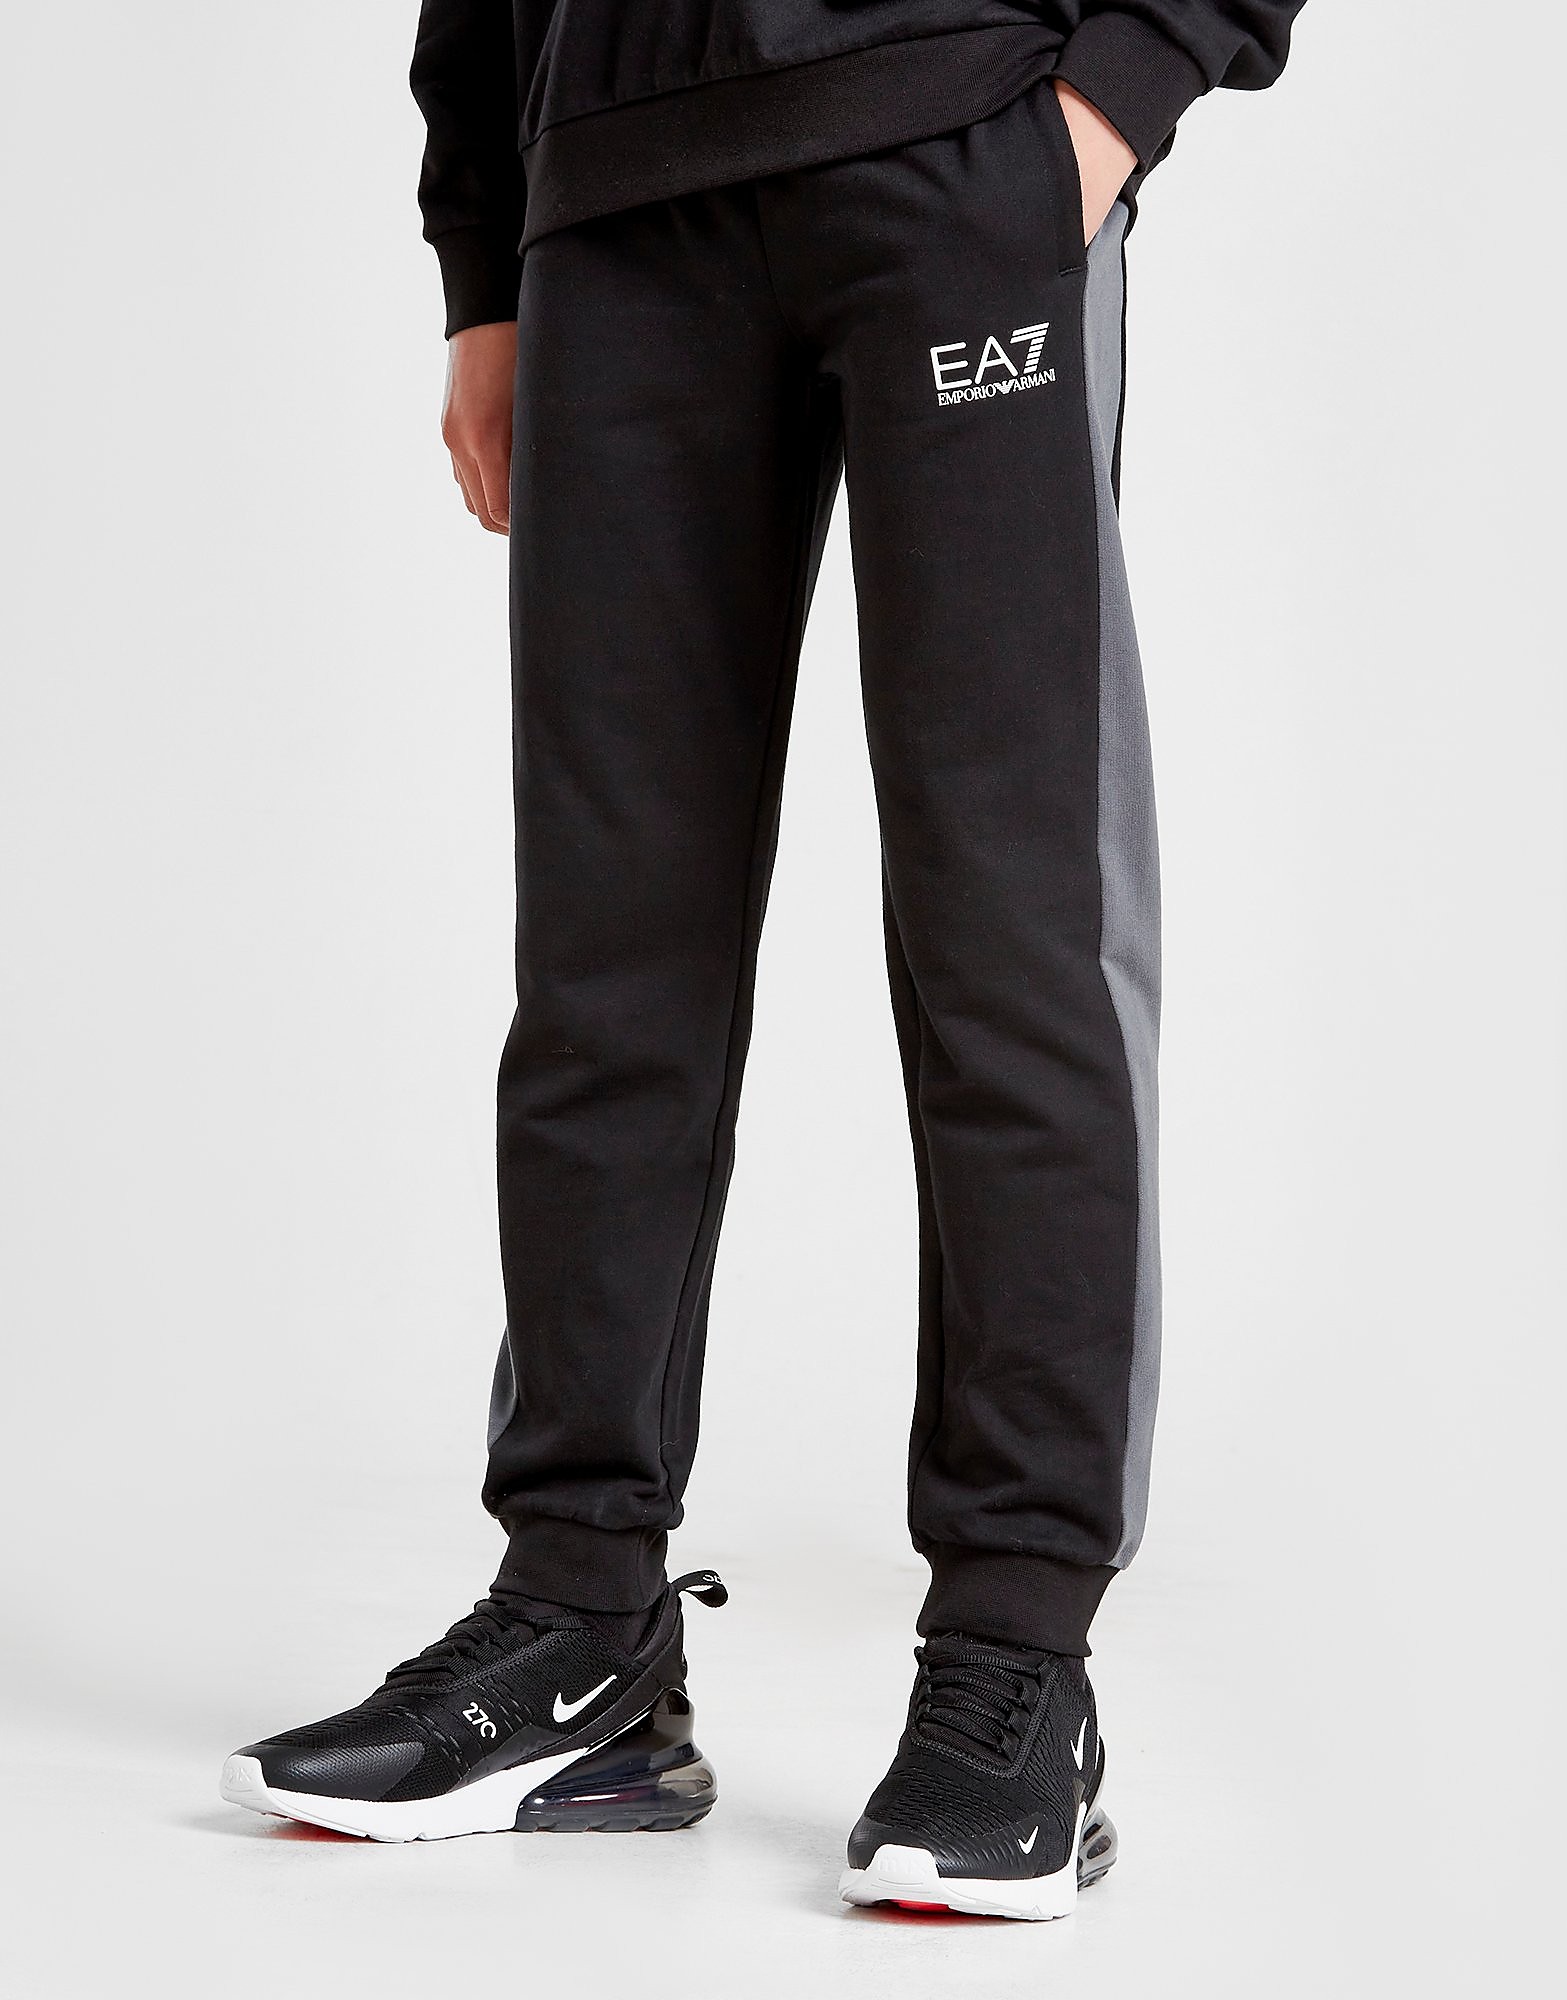 

Emporio Armani EA7 Colour Block Track Pants Junior - Black/Grey - Kids, Black/Grey